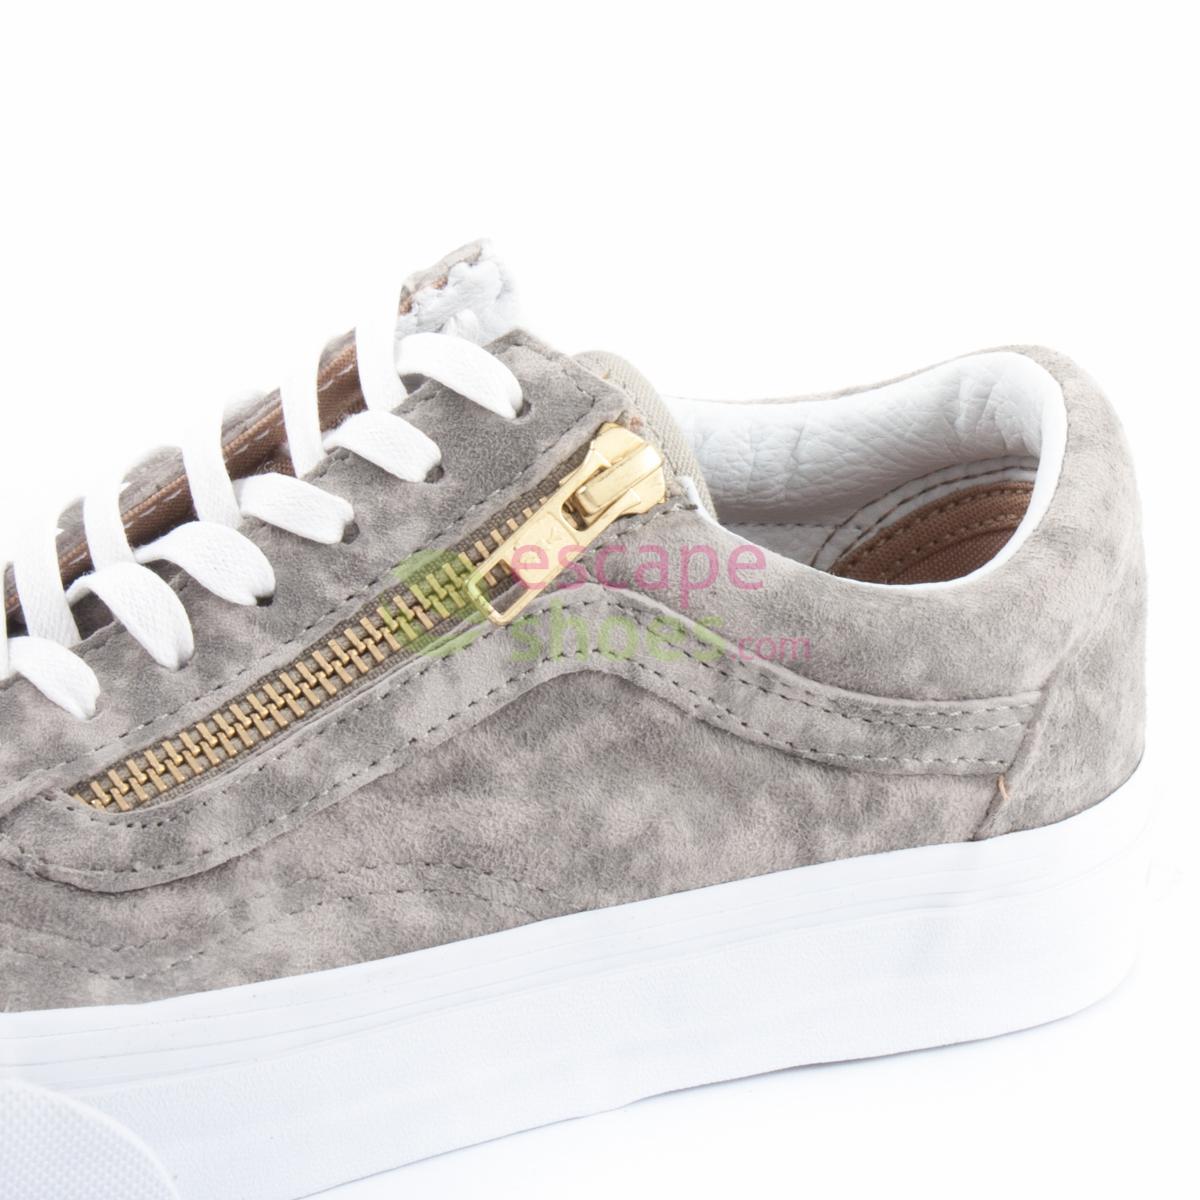 vans marble suede old skool zip sneakers